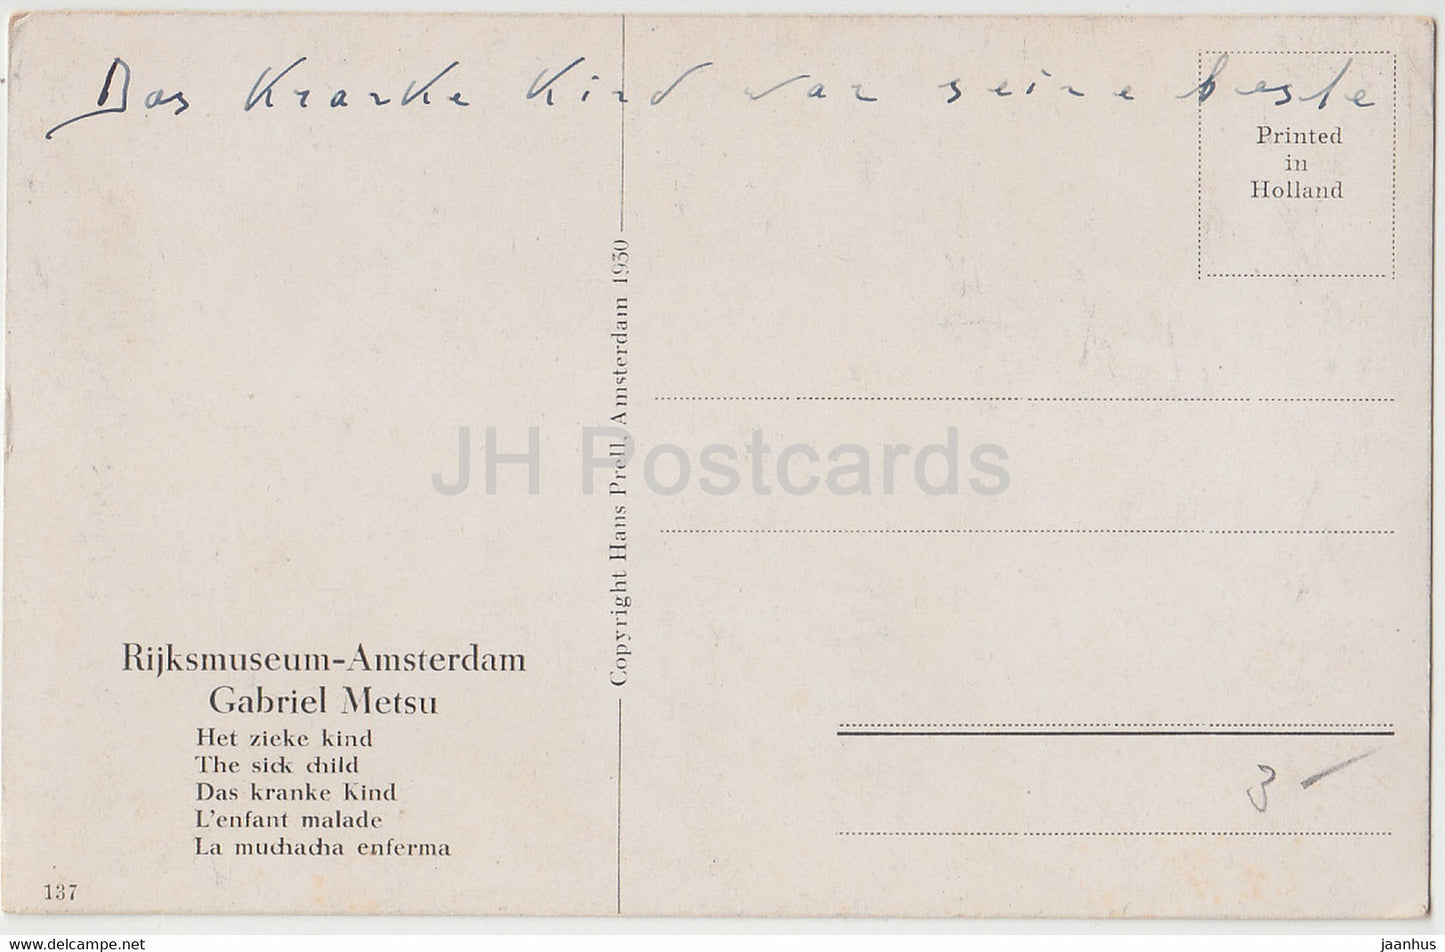 Gemälde von Gabriel Metsu – Das kranke Kind – Rijksmuseum Amsterdam – Niederländische Kunst, alte Postkarte – 1930 – Niederlande – gebraucht